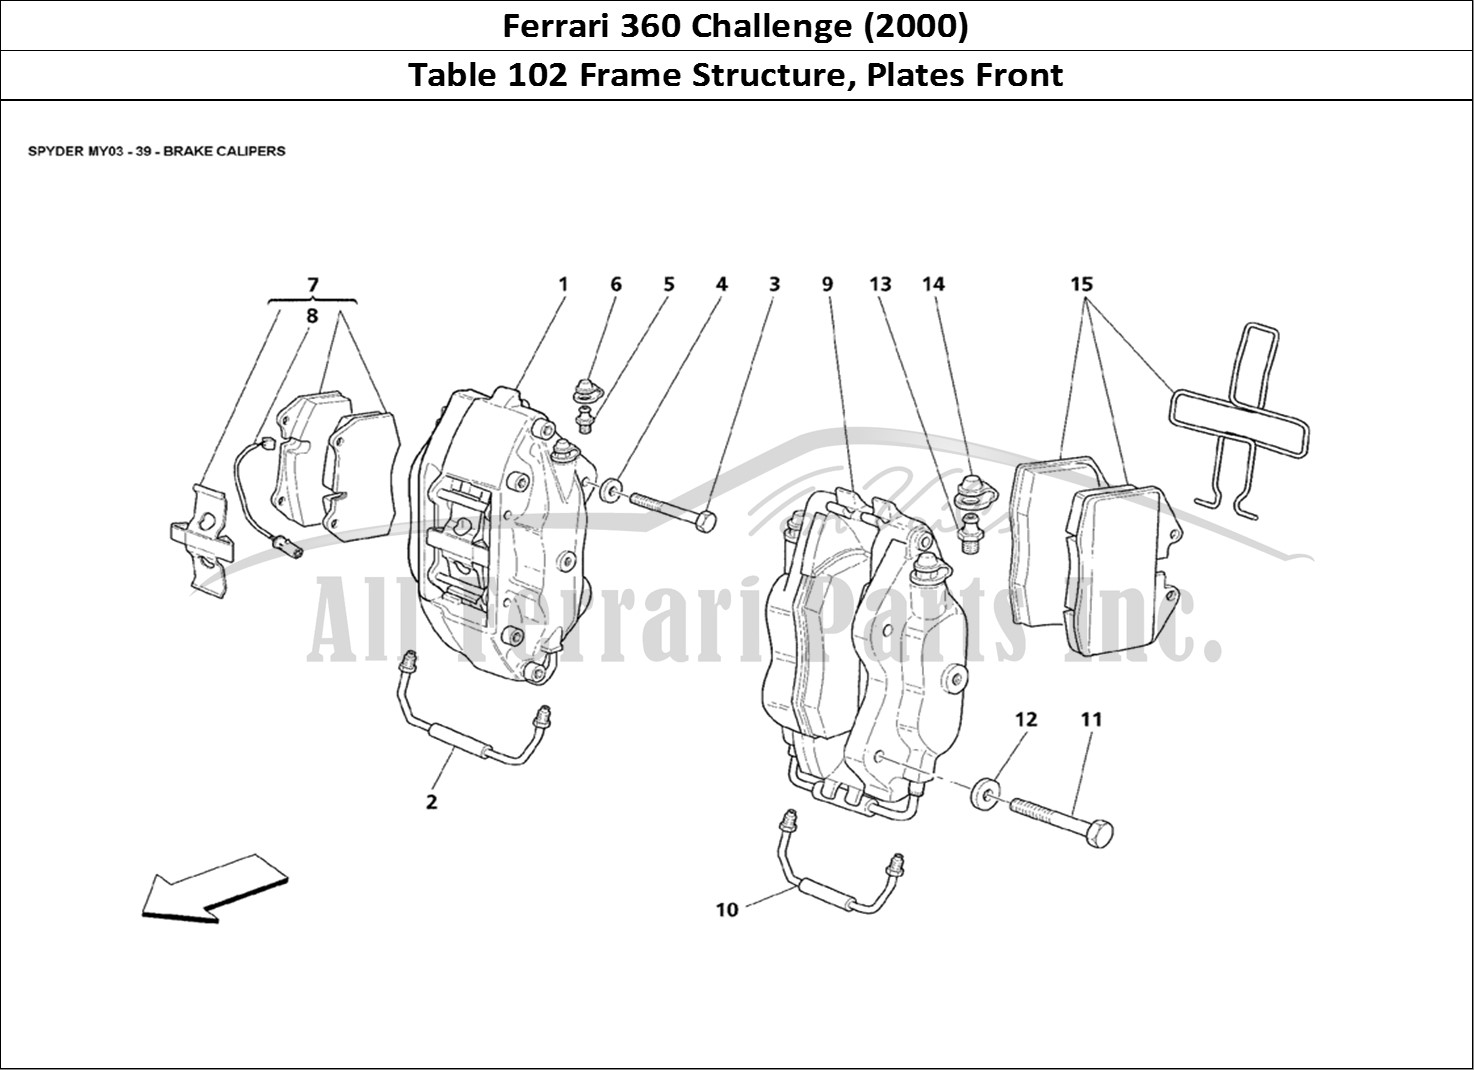 Ferrari Parts Ferrari 360 Challenge (2000) Page 102 Frame - Front Elements St